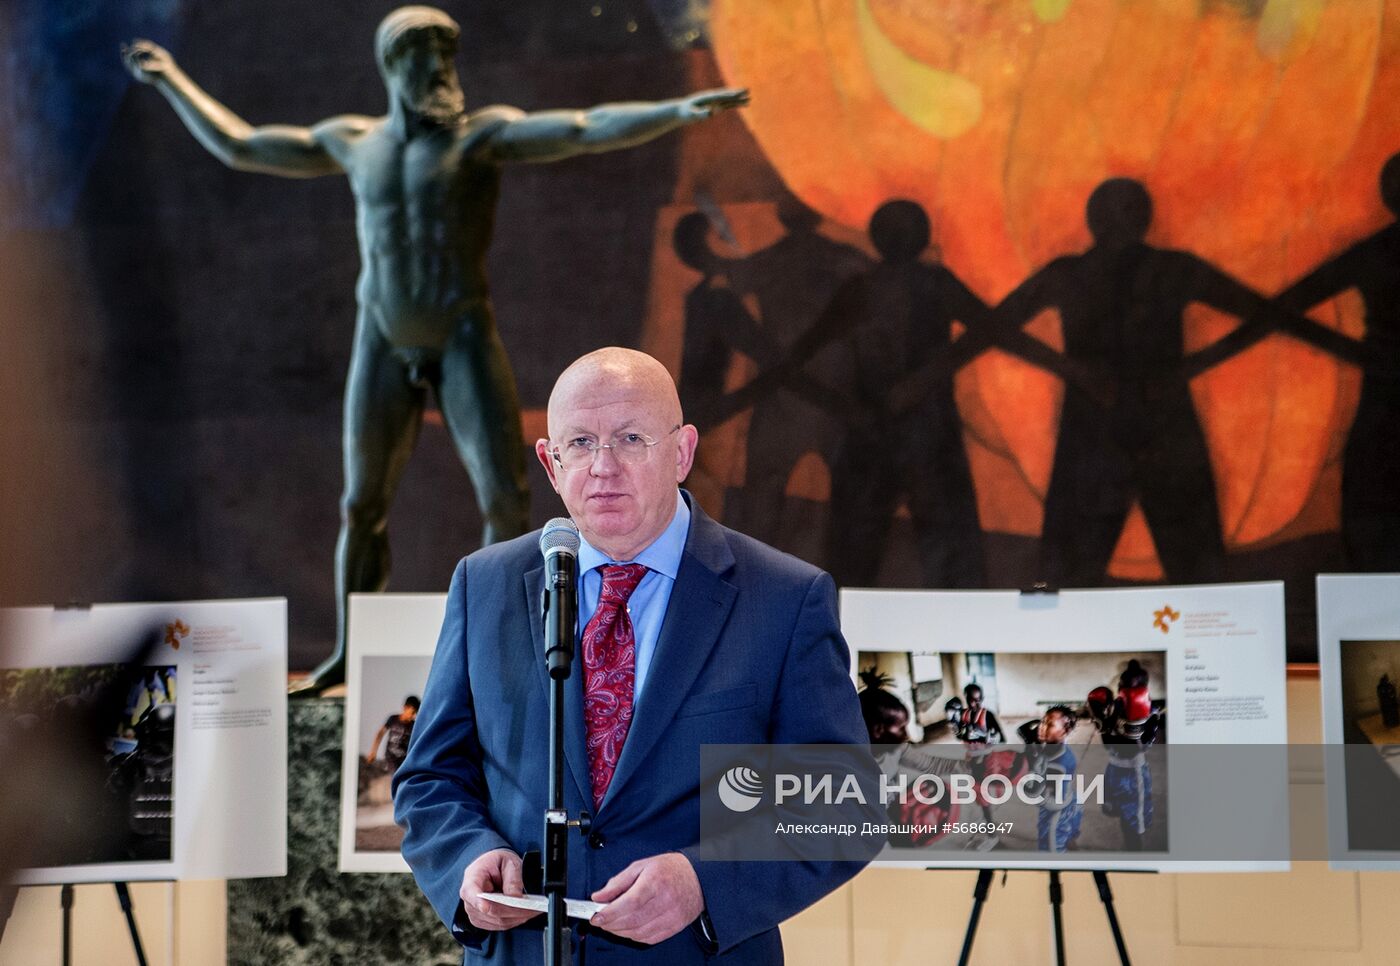 Выставка лауреатов конкурса им. Стенина-2018 в штаб-квартире ООН